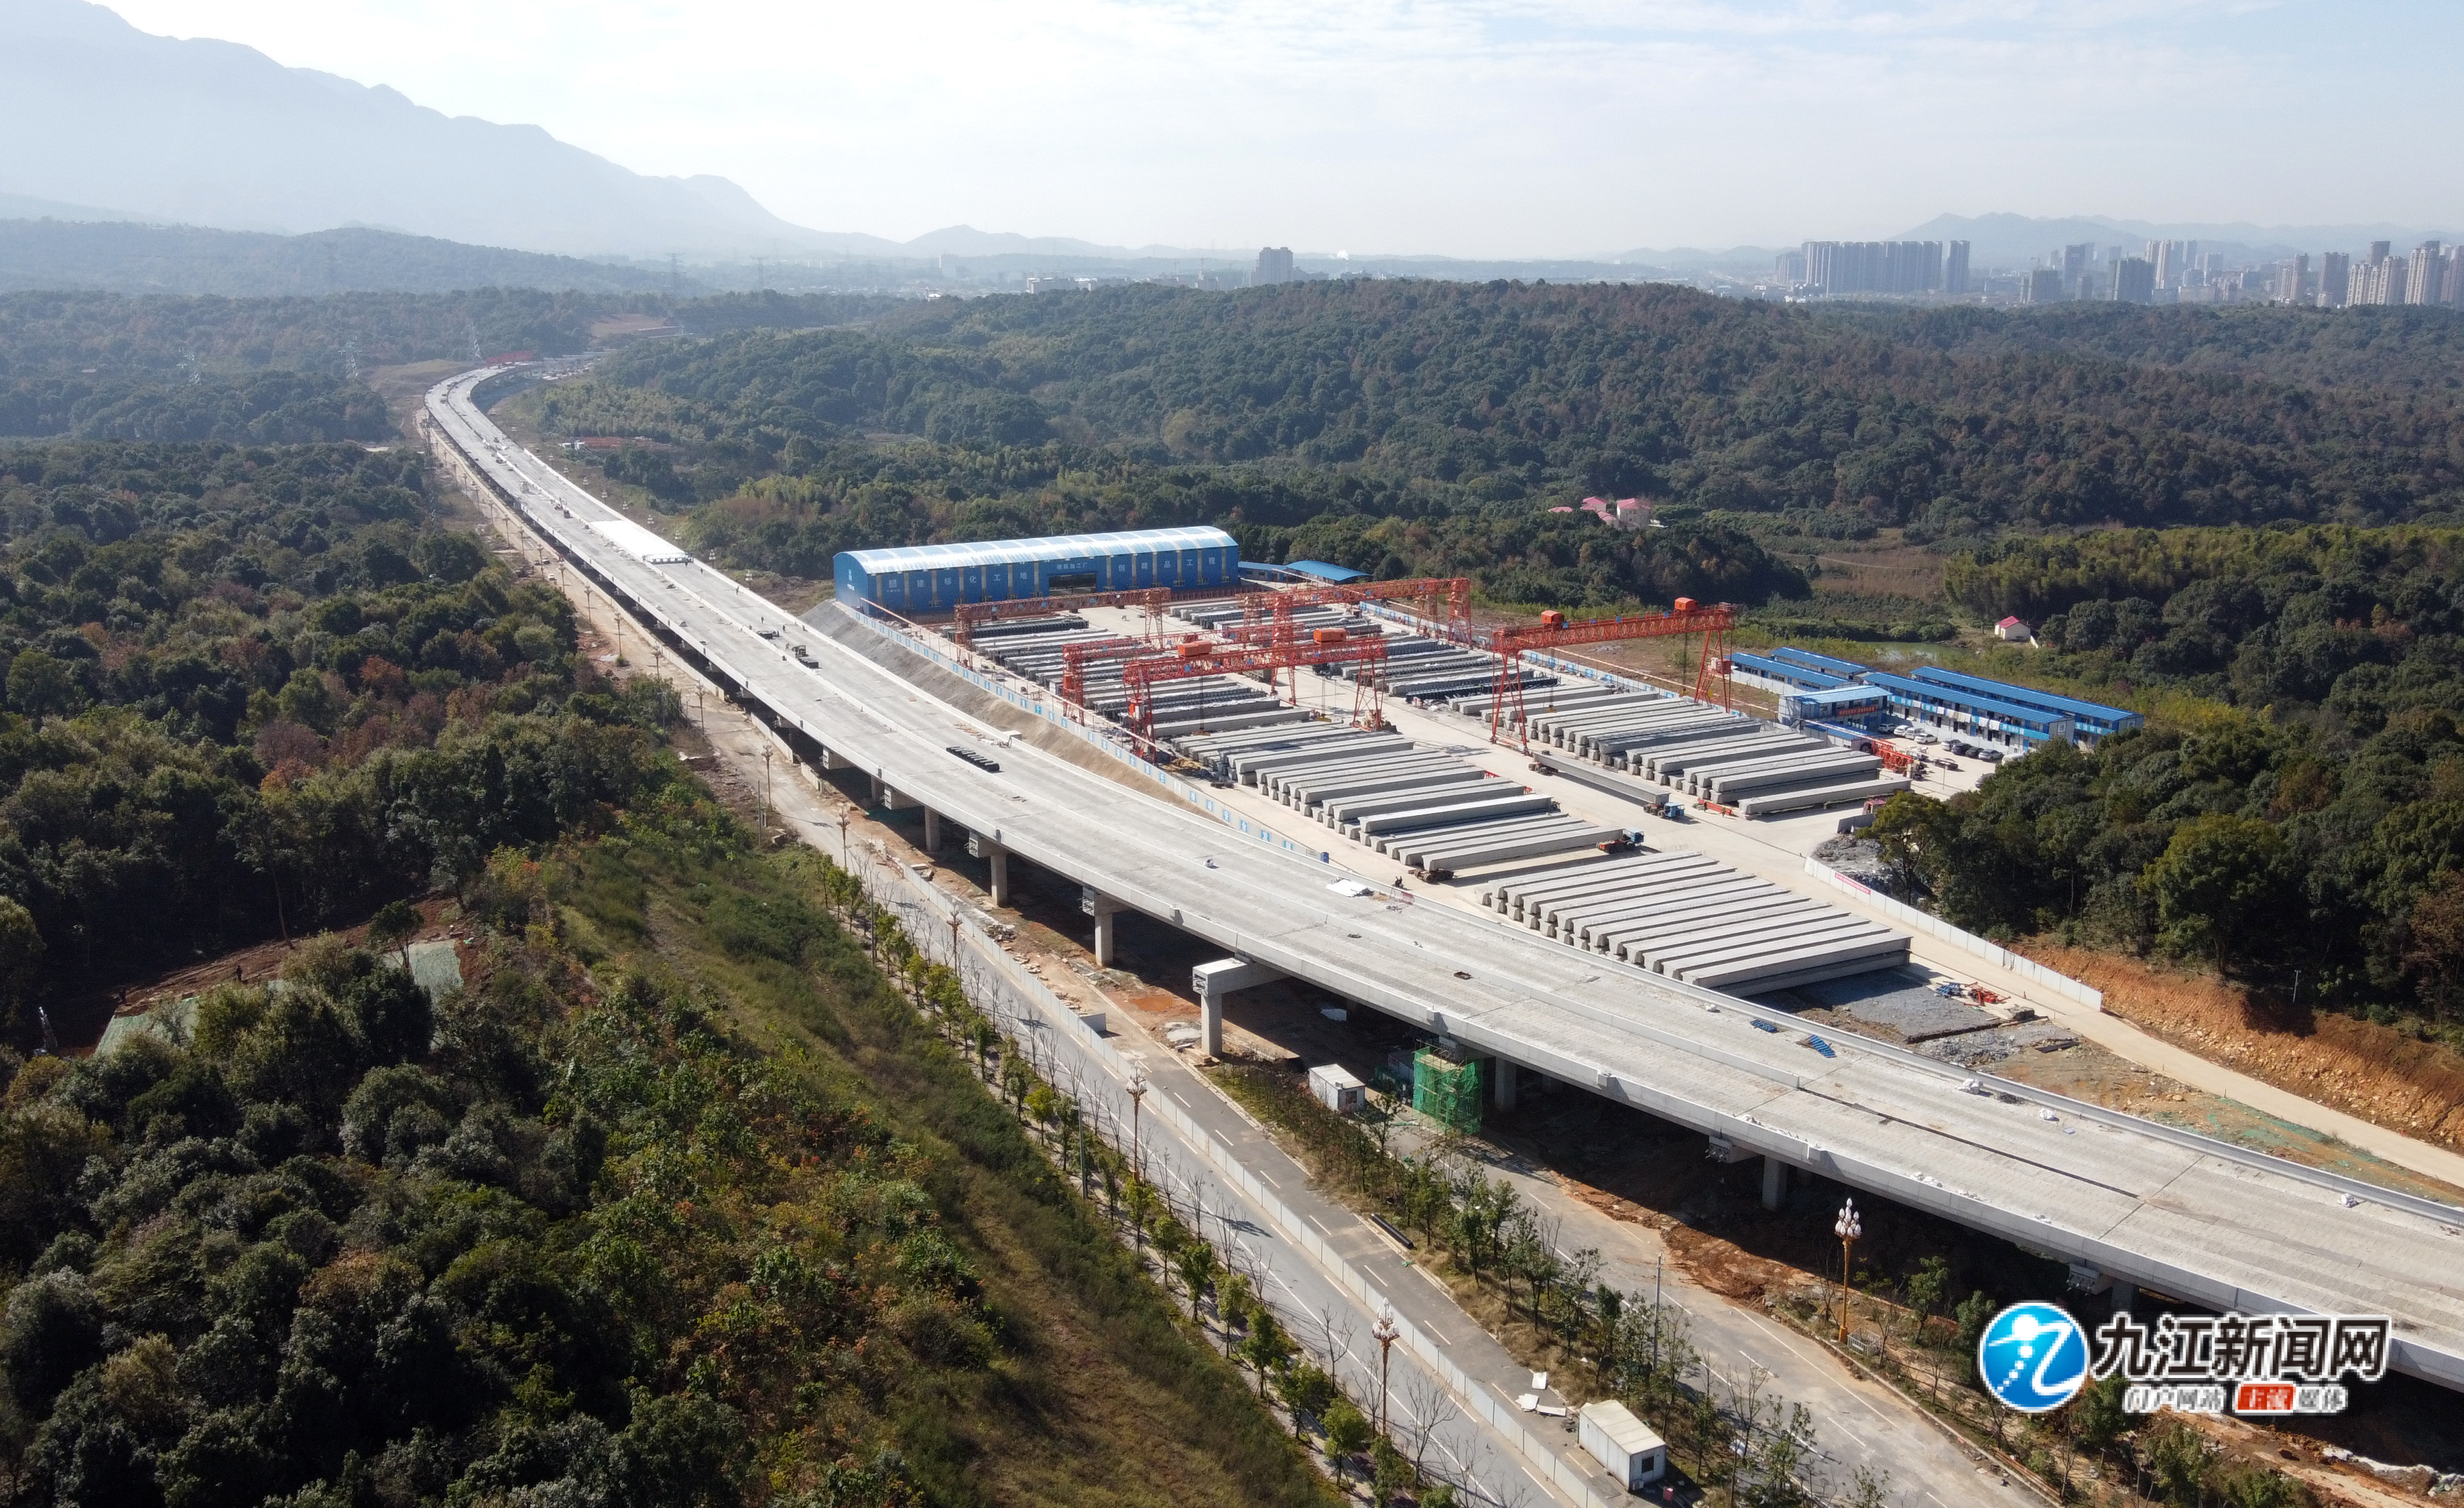 高架桥基本成形九江高质量推进新建快速路项目建设